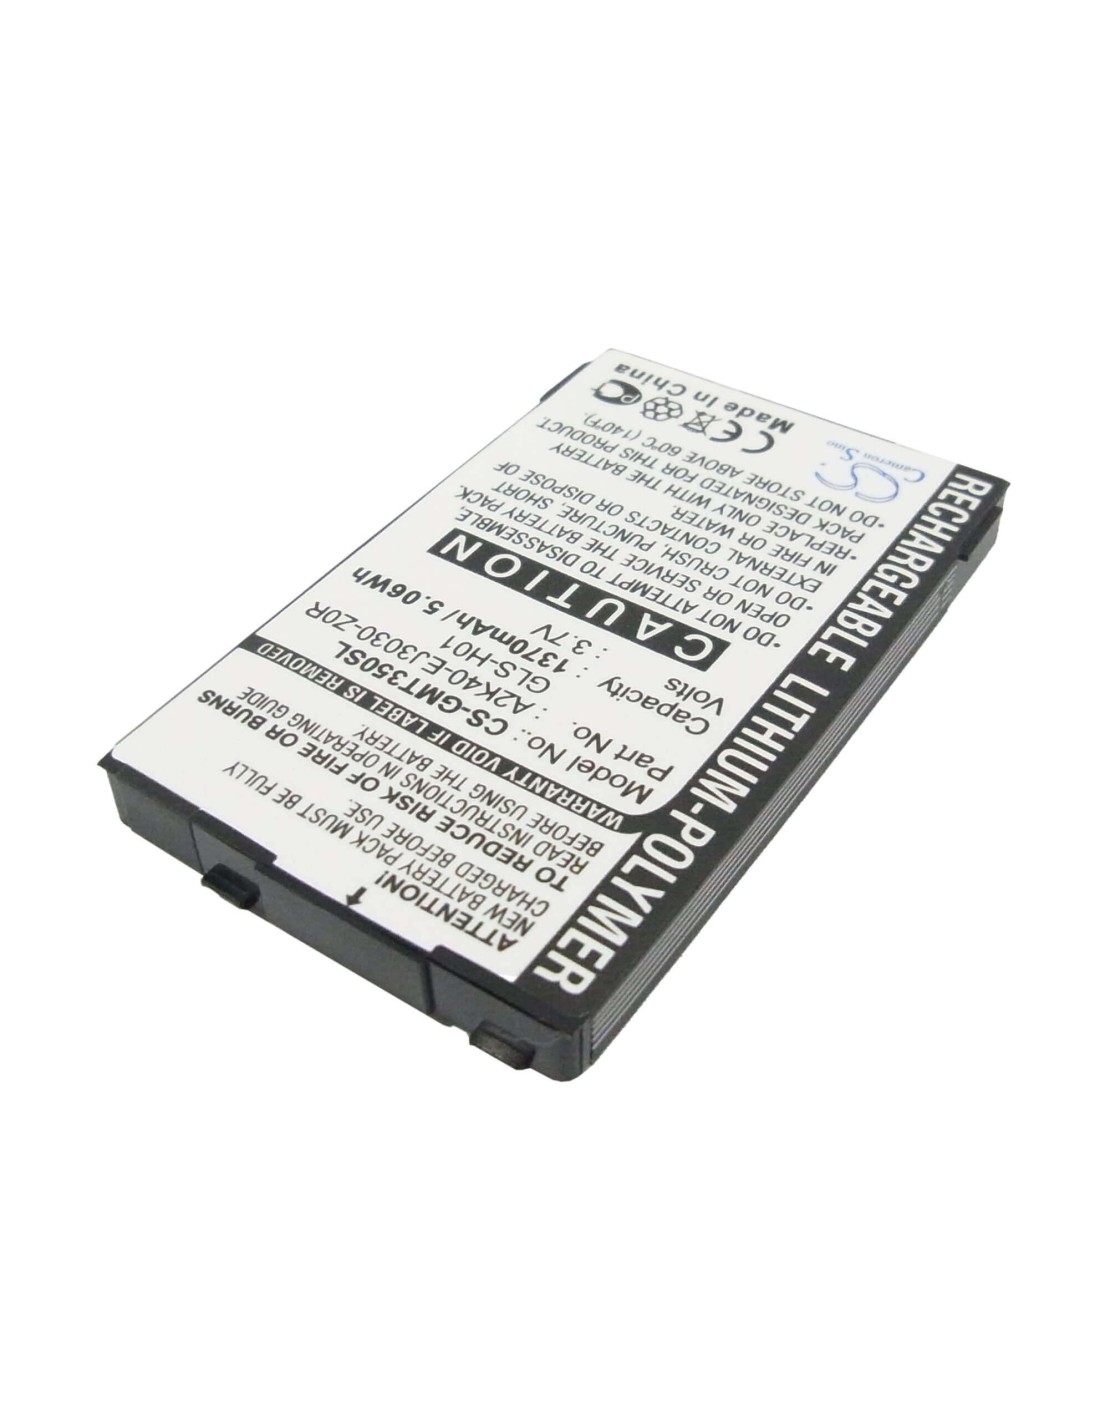 Battery for Gigabyte gSmart G300, gSmart i350 3.7V, 1370mAh - 5.07Wh